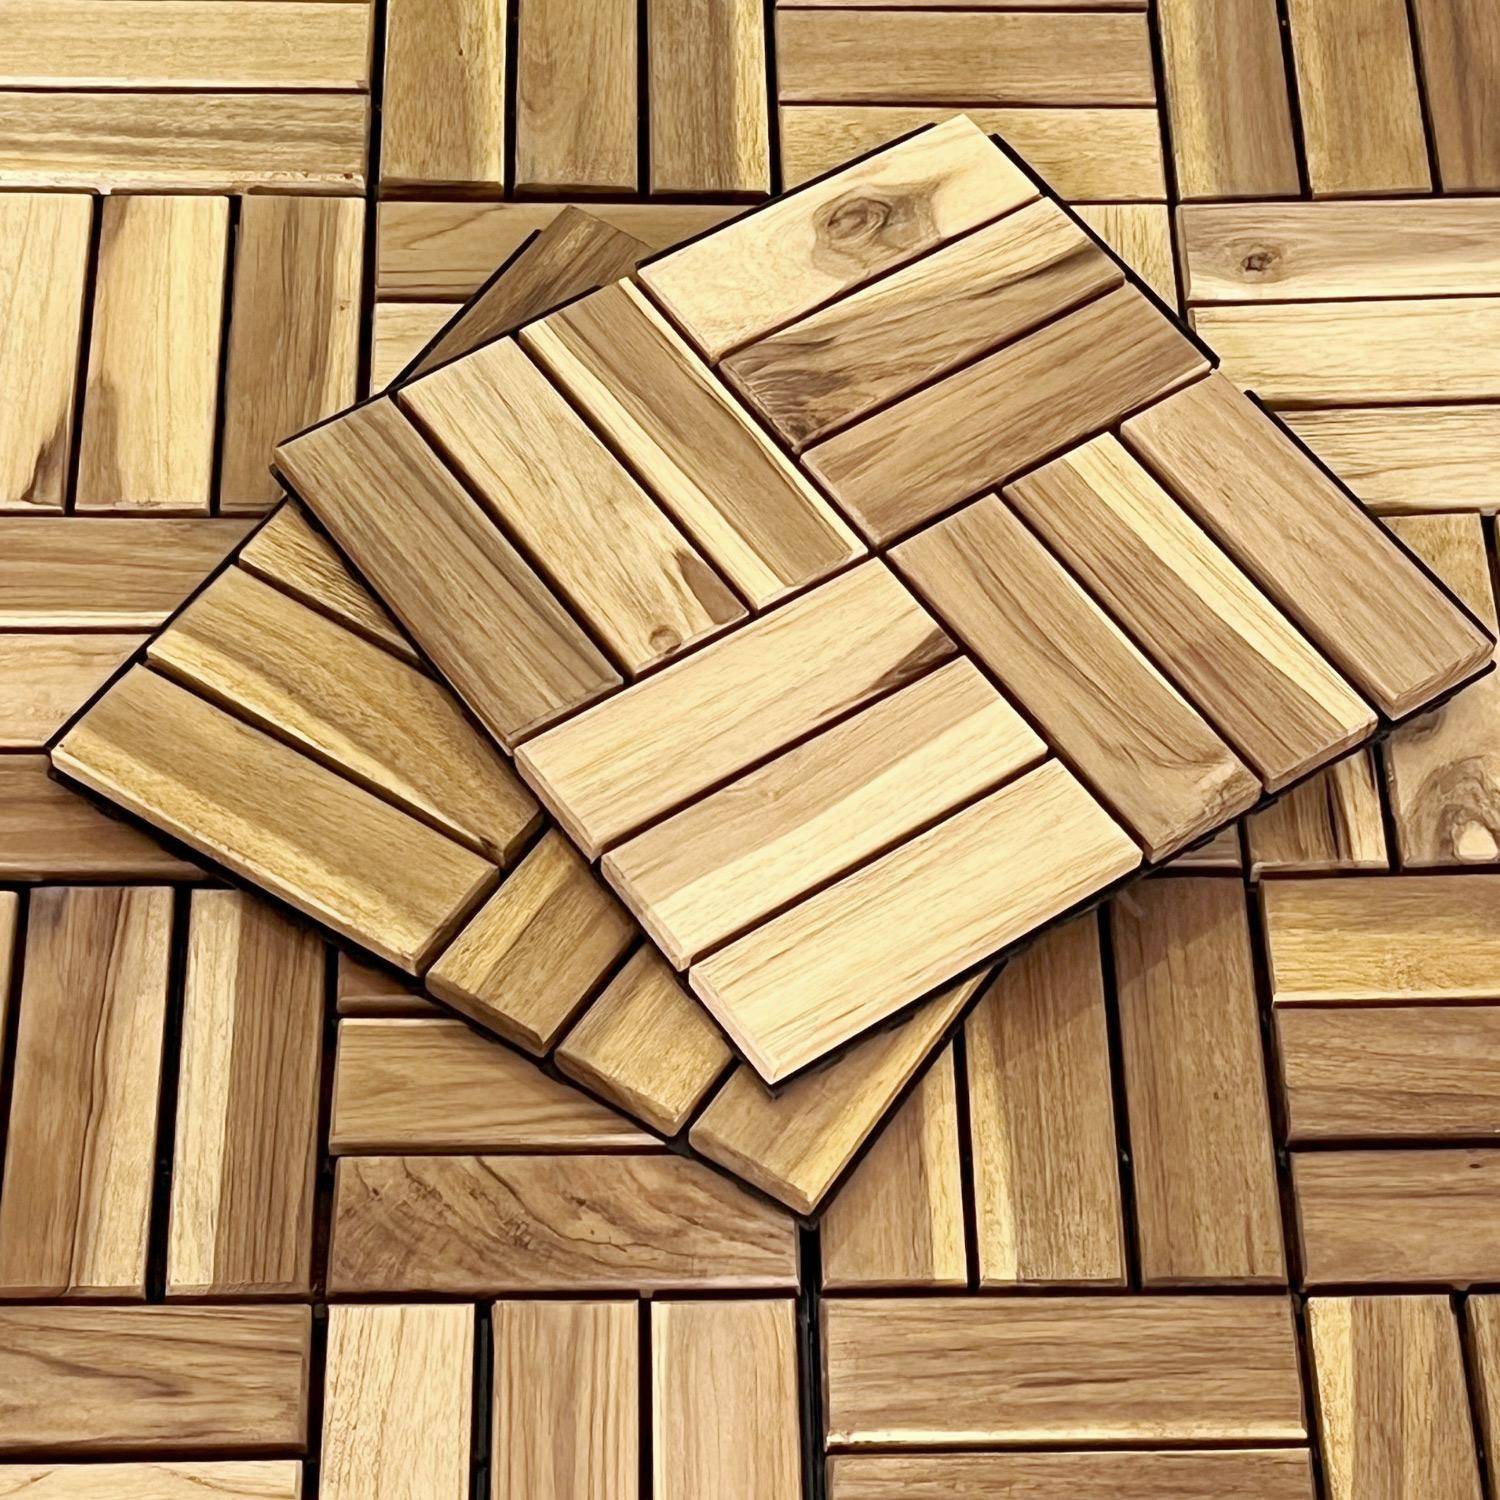 Lote de 36 ladrilhos de madeira de acácia para decks 30x30cm, padrão quadrado, encaixáveis,sweeek,Photo5